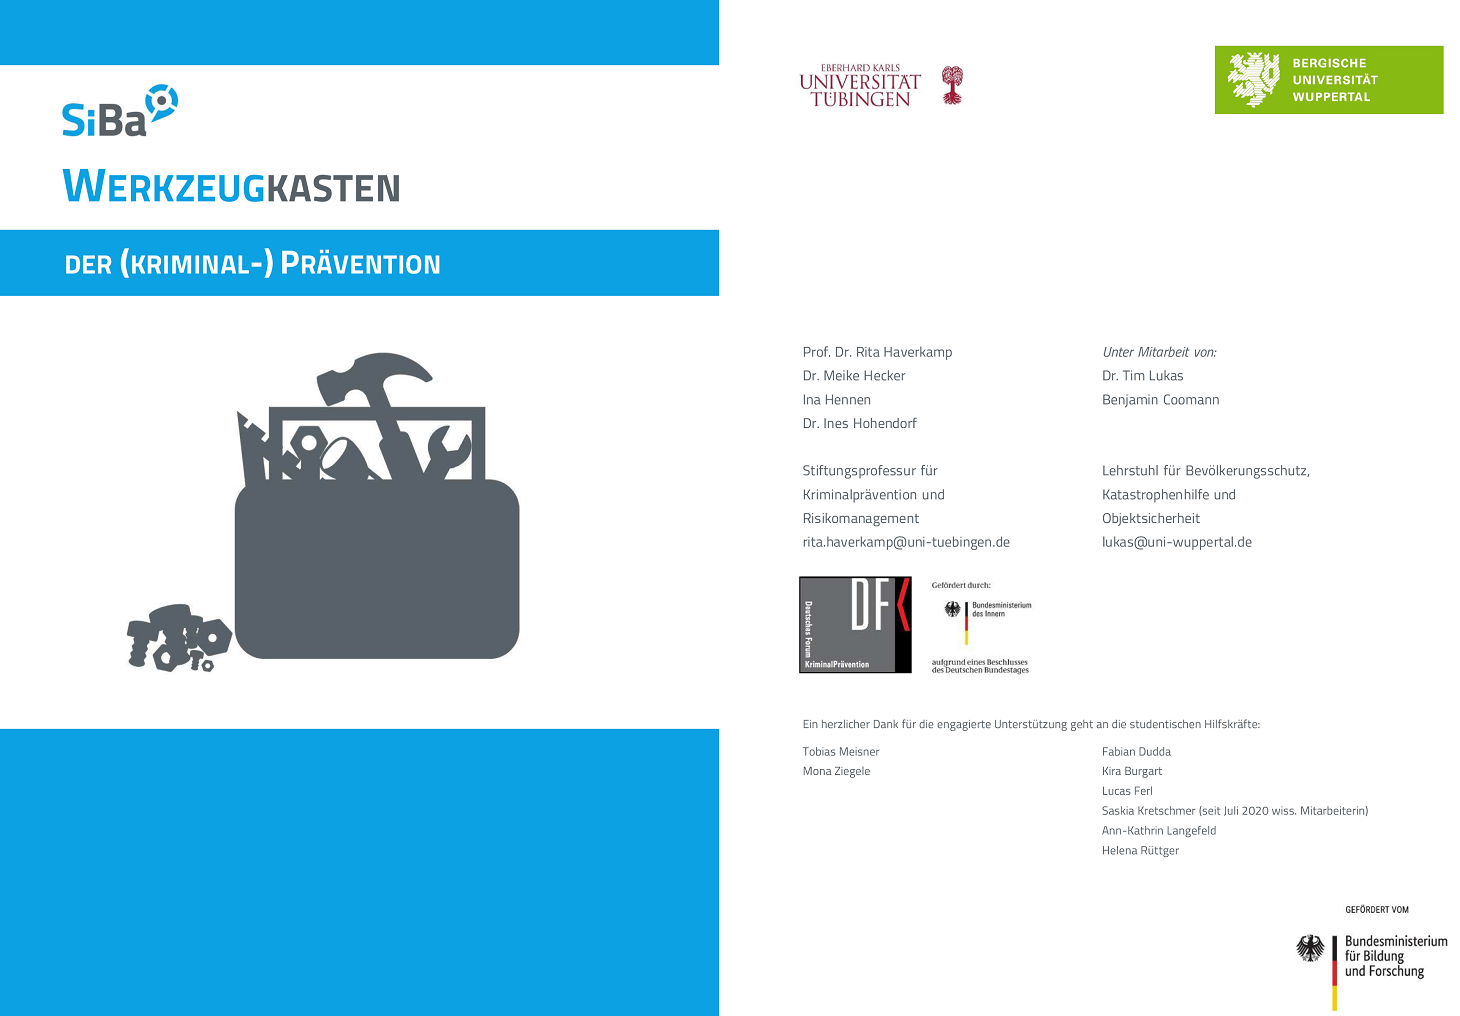 SiBa-Werkzeugkasten und grafische Darstellung von Werkzeugen sowie Nennung der beteiligten Akteure wie Deutsches Zentrum für Kriminalpräventionl